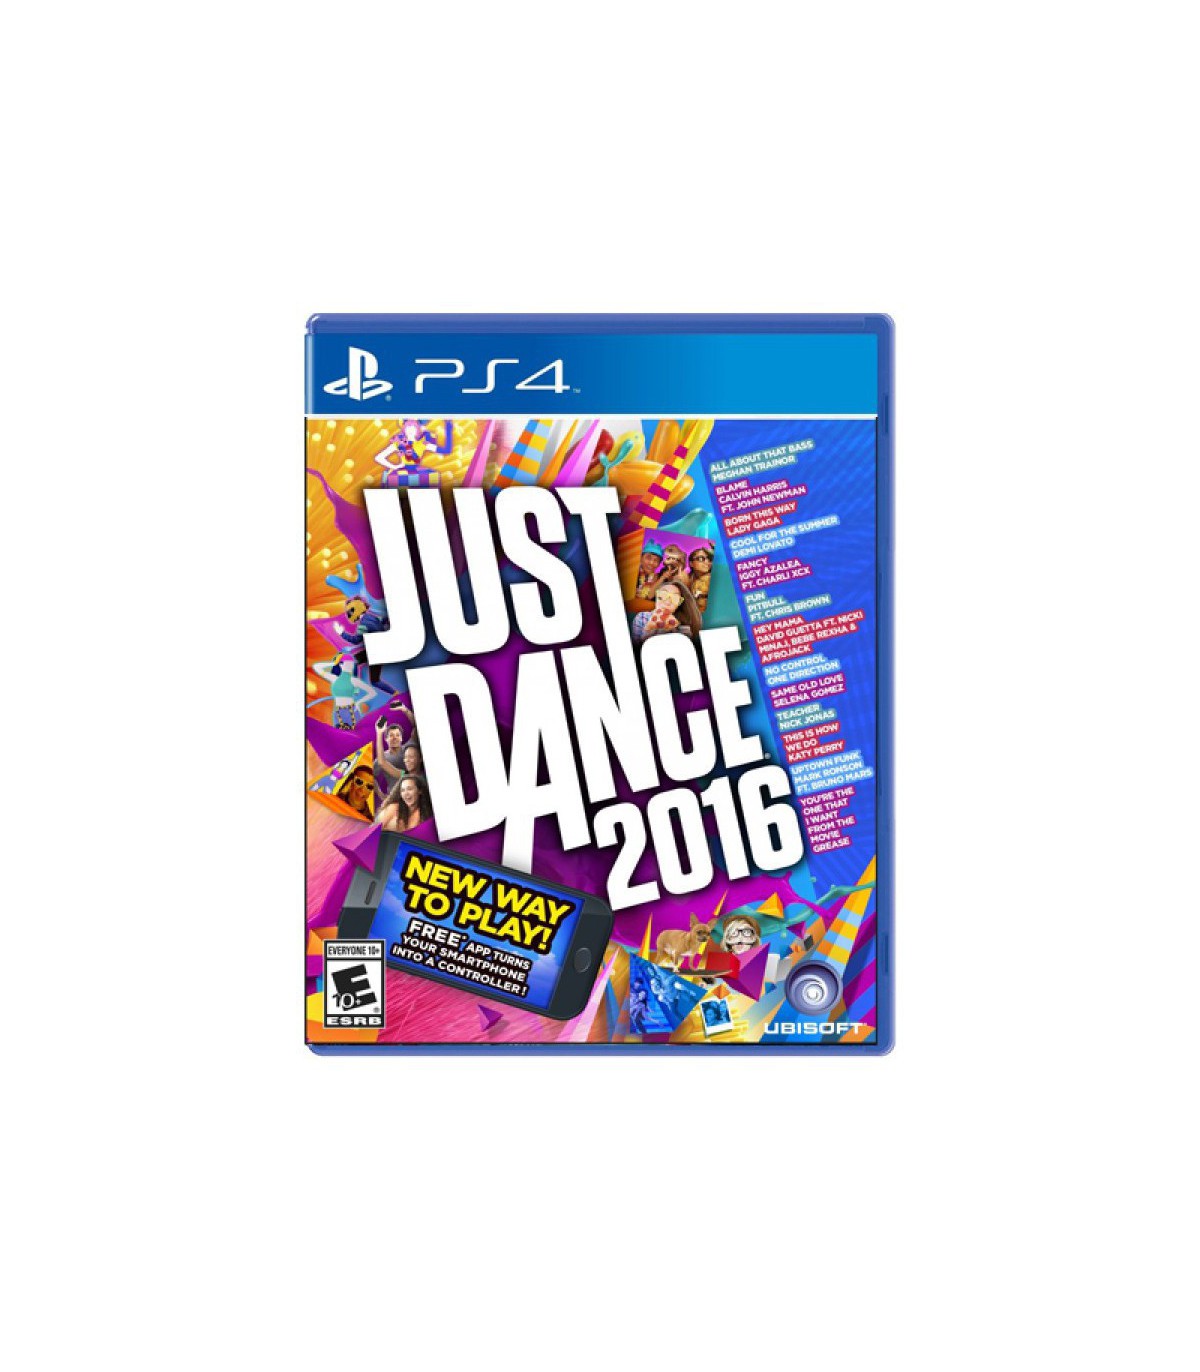 بازی Just Dance 2016 کارکرده - پلی استیشن 4